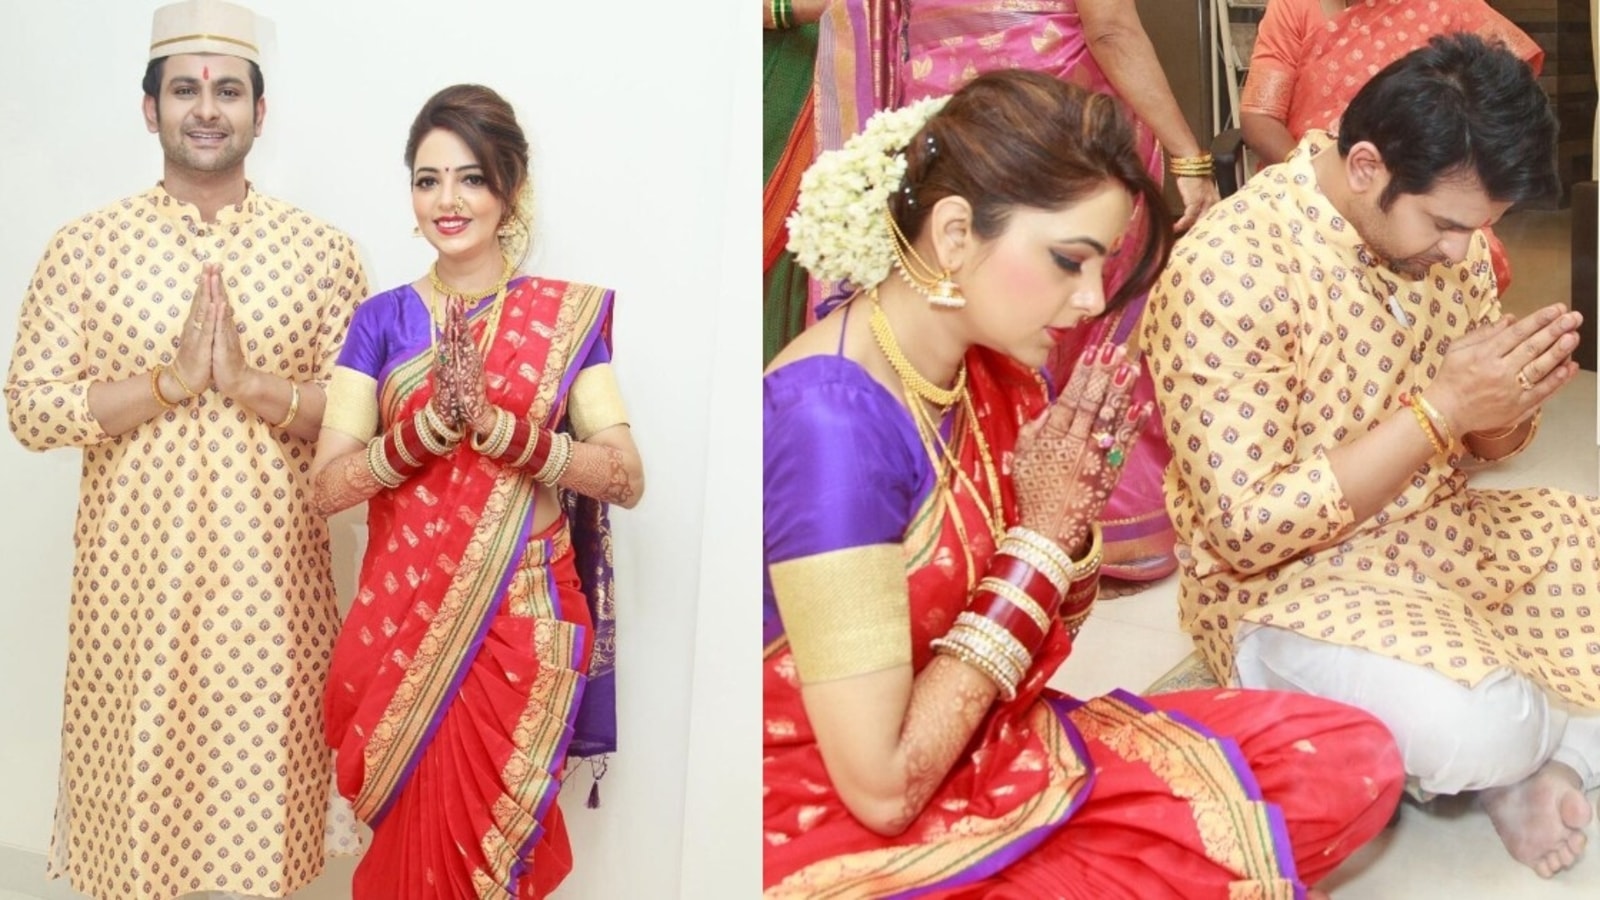 Sugandha Mishra stuns as a newlywed Maharashtrian bride, joins ...